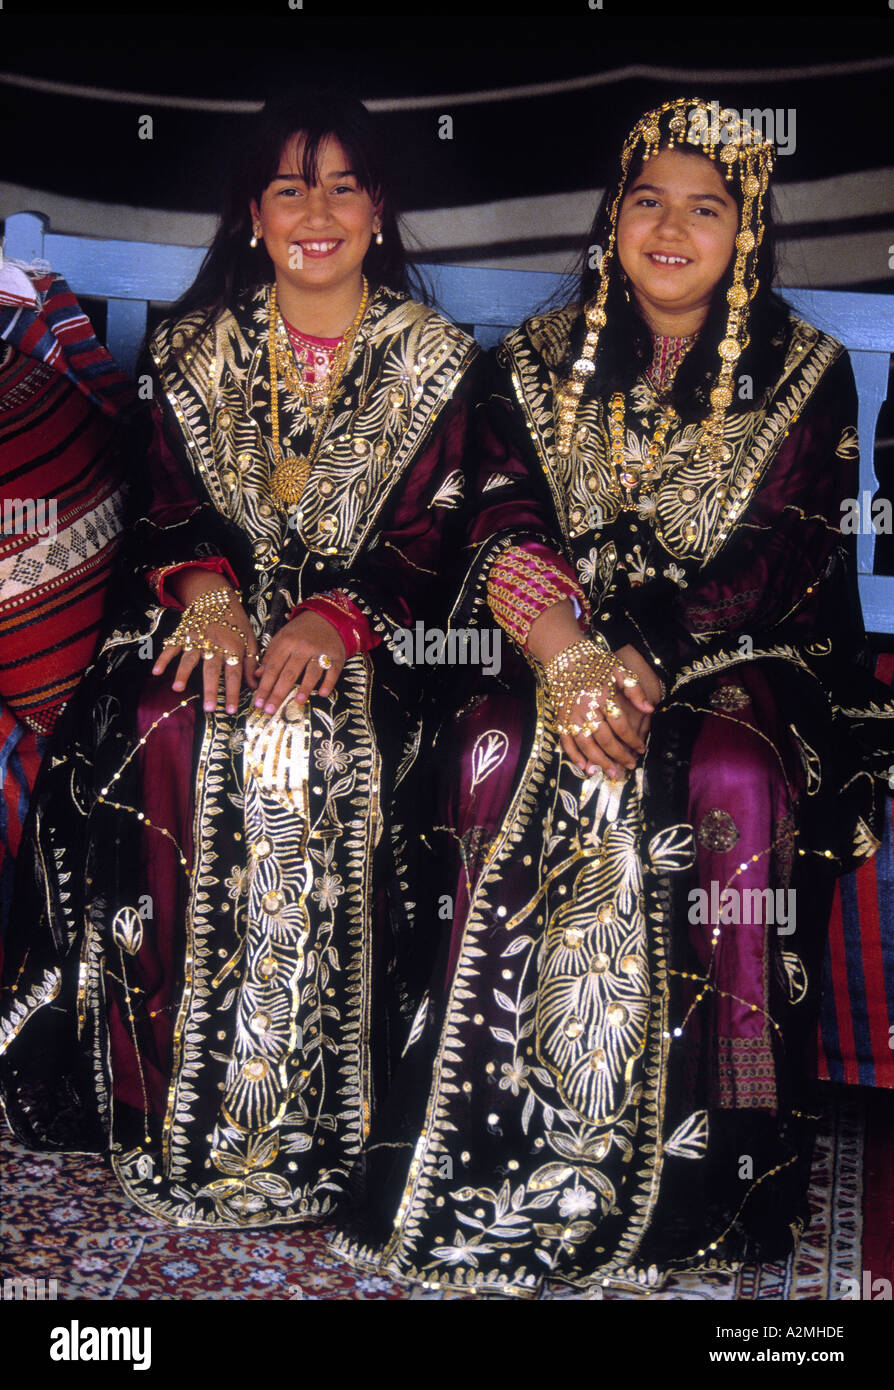 girls-in-traditional-dress-in-kuwait-city-kuwait-photo-by-jayne-fincher-A2MHDE.jpg